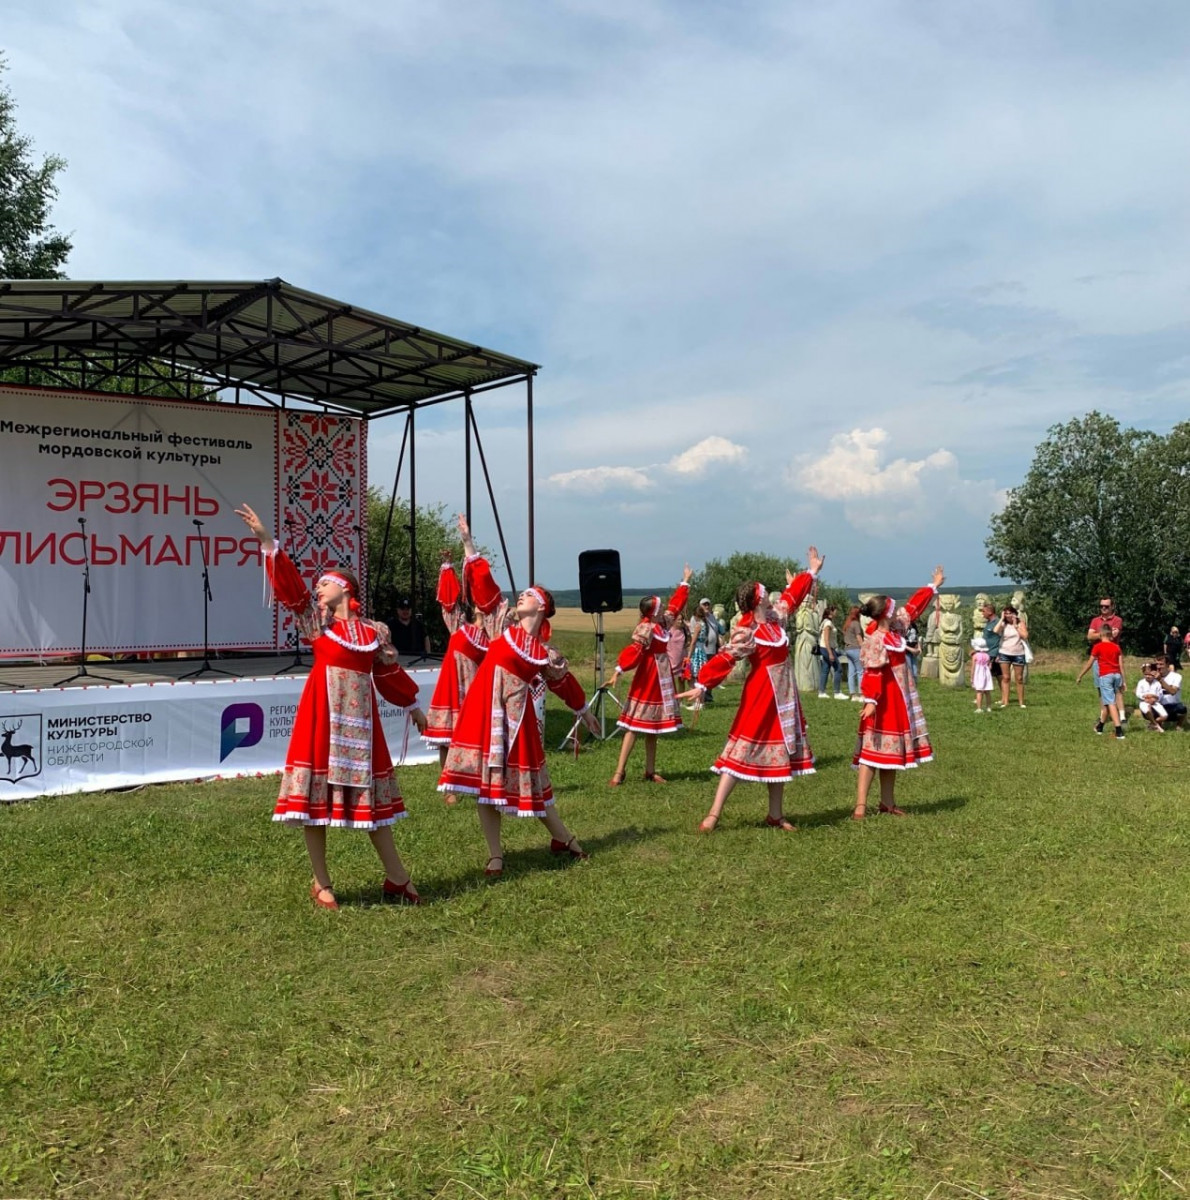 Фестиваль мордовской культуры «Эрзянь лисьмапря» пройдет в Нижегородской области